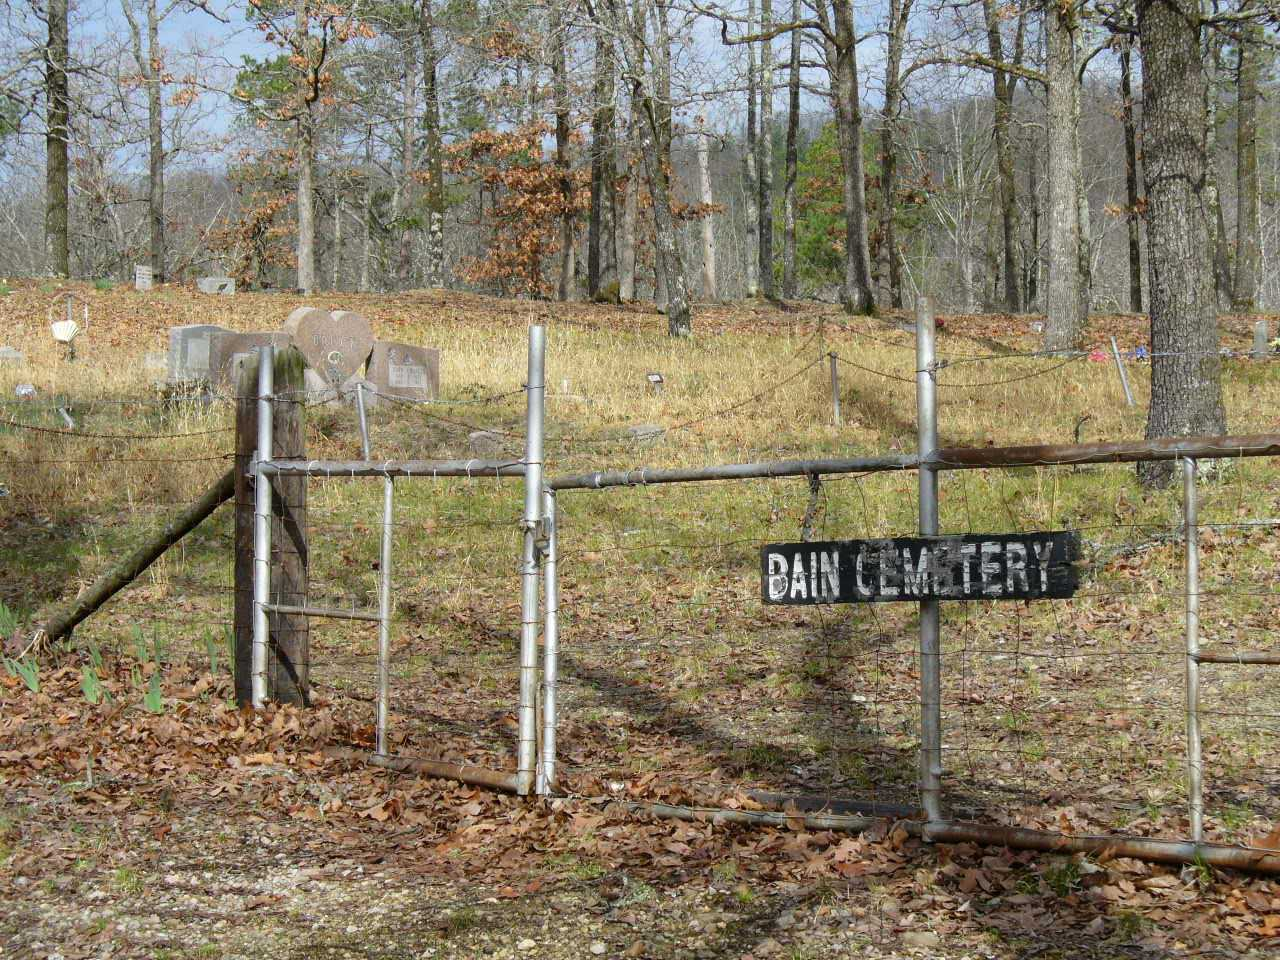 Bains Cemetery